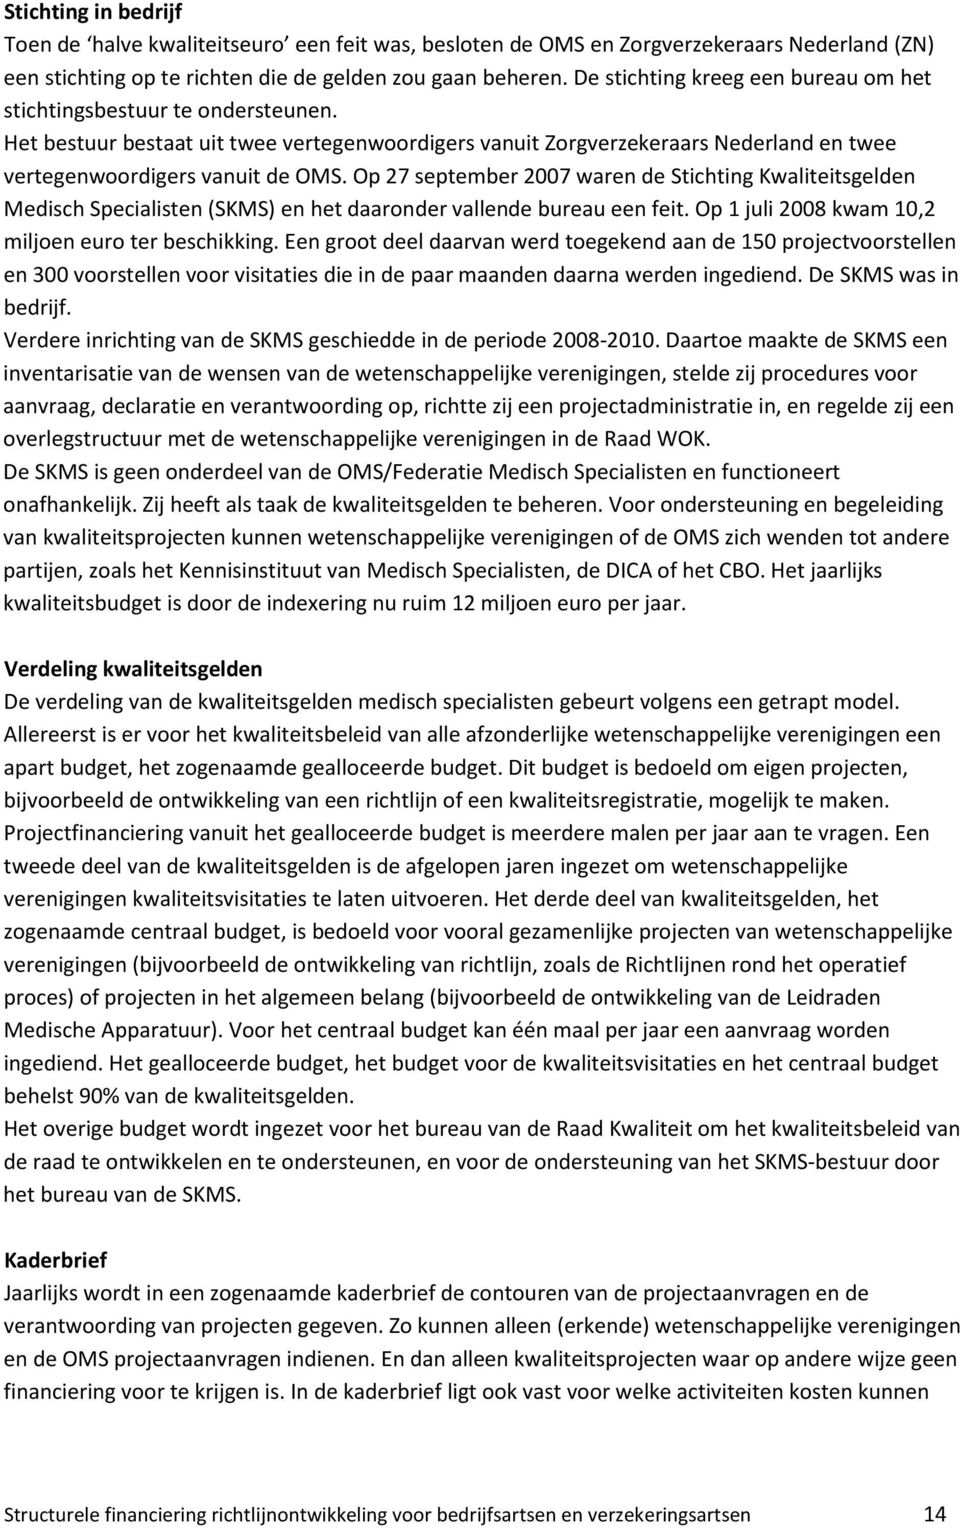 Op 27 september 2007 waren de Stichting Kwaliteitsgelden Medisch Specialisten (SKMS) en het daaronder vallende bureau een feit. Op 1 juli 2008 kwam 10,2 miljoen euro ter beschikking.